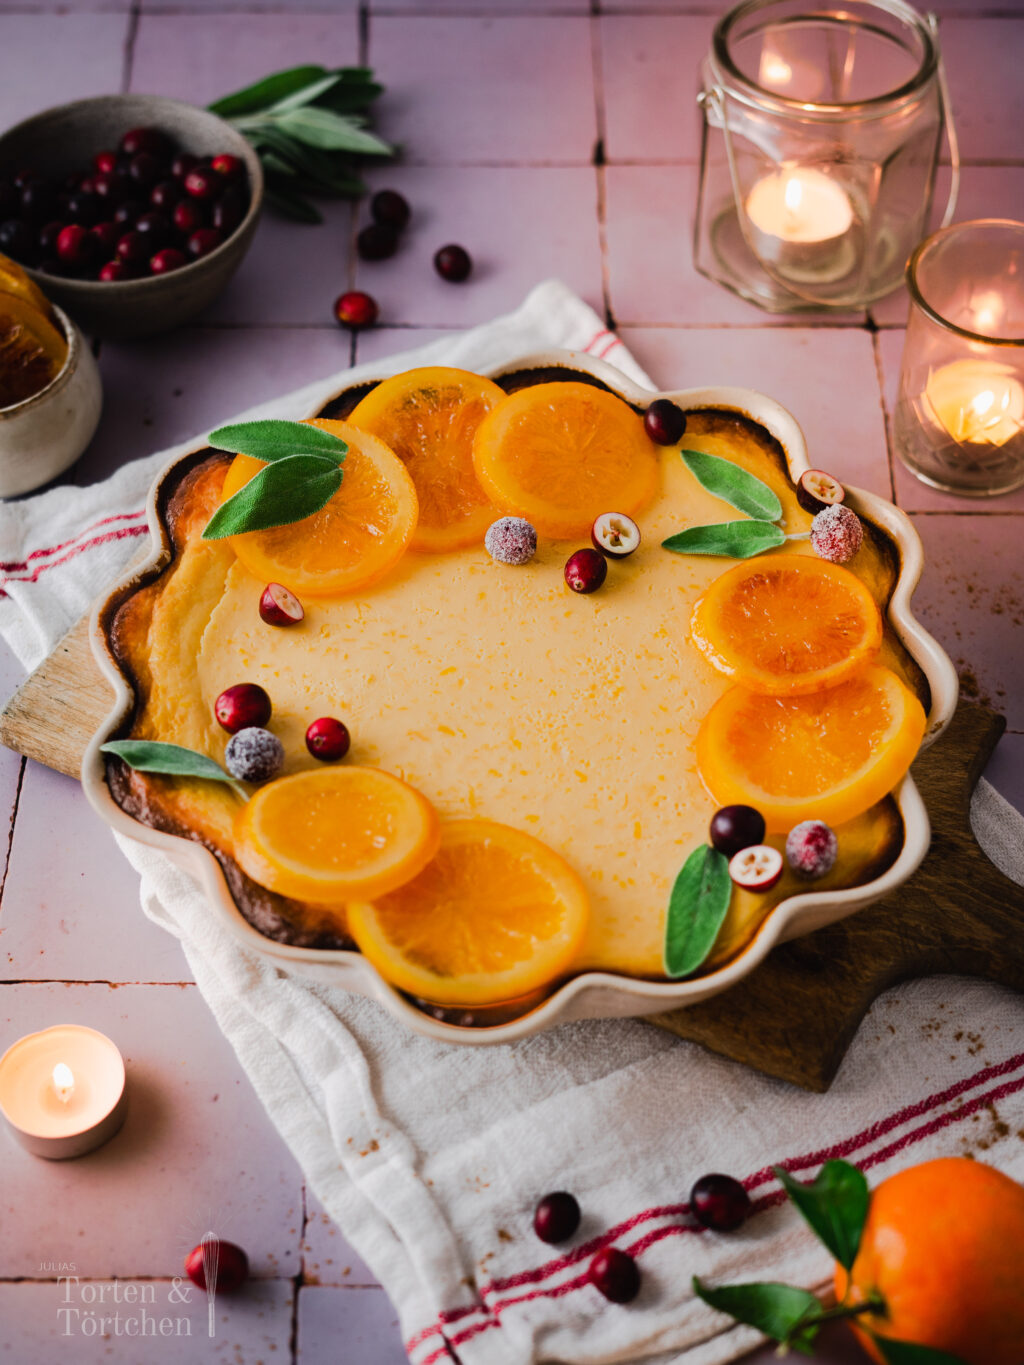 Der perfekte Kuchen für alle Citrus Freunde. Eine Variante des amerikanischen Key Lime Pies, dieses mal Mit Orangen. Die cremige Füllung aus aromatischen Orangen-Zesten und mit Kondensmilch macht den Pie für ein absolutes Highlight auf jeder Kaffeetafel! #Backen #Pie #Kuchen #Orangenkuchen #Torte #Rezept #KeyLimePie